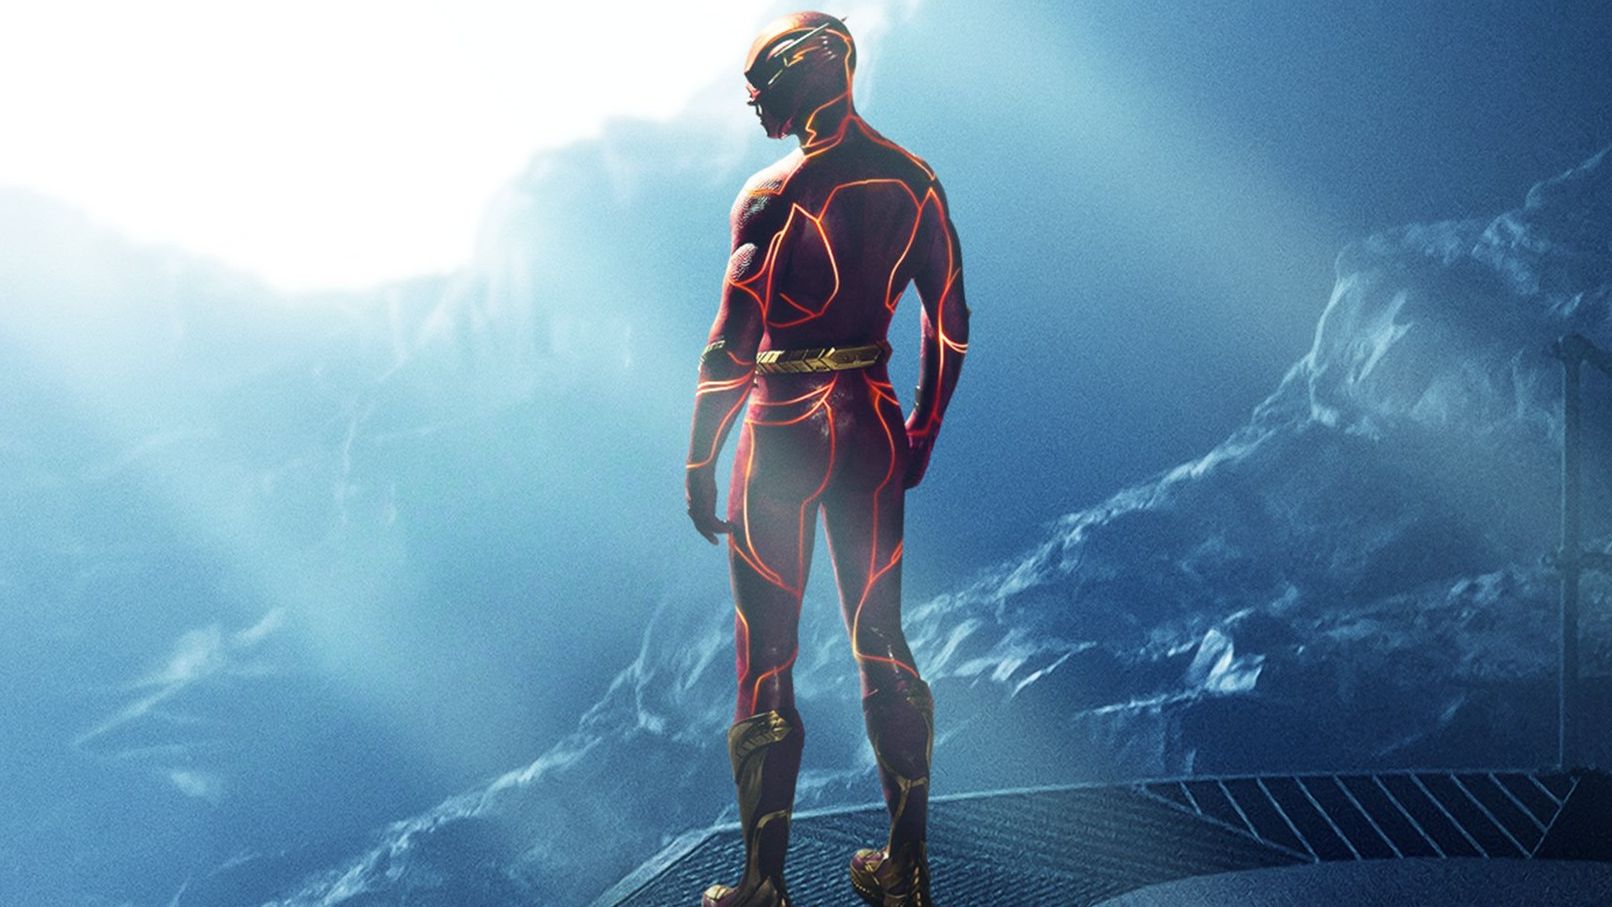 La aparición de Ezra Miller en The Flash; Elementos y Flamin’ hot. Las recomendaciones de Fernando Zavala